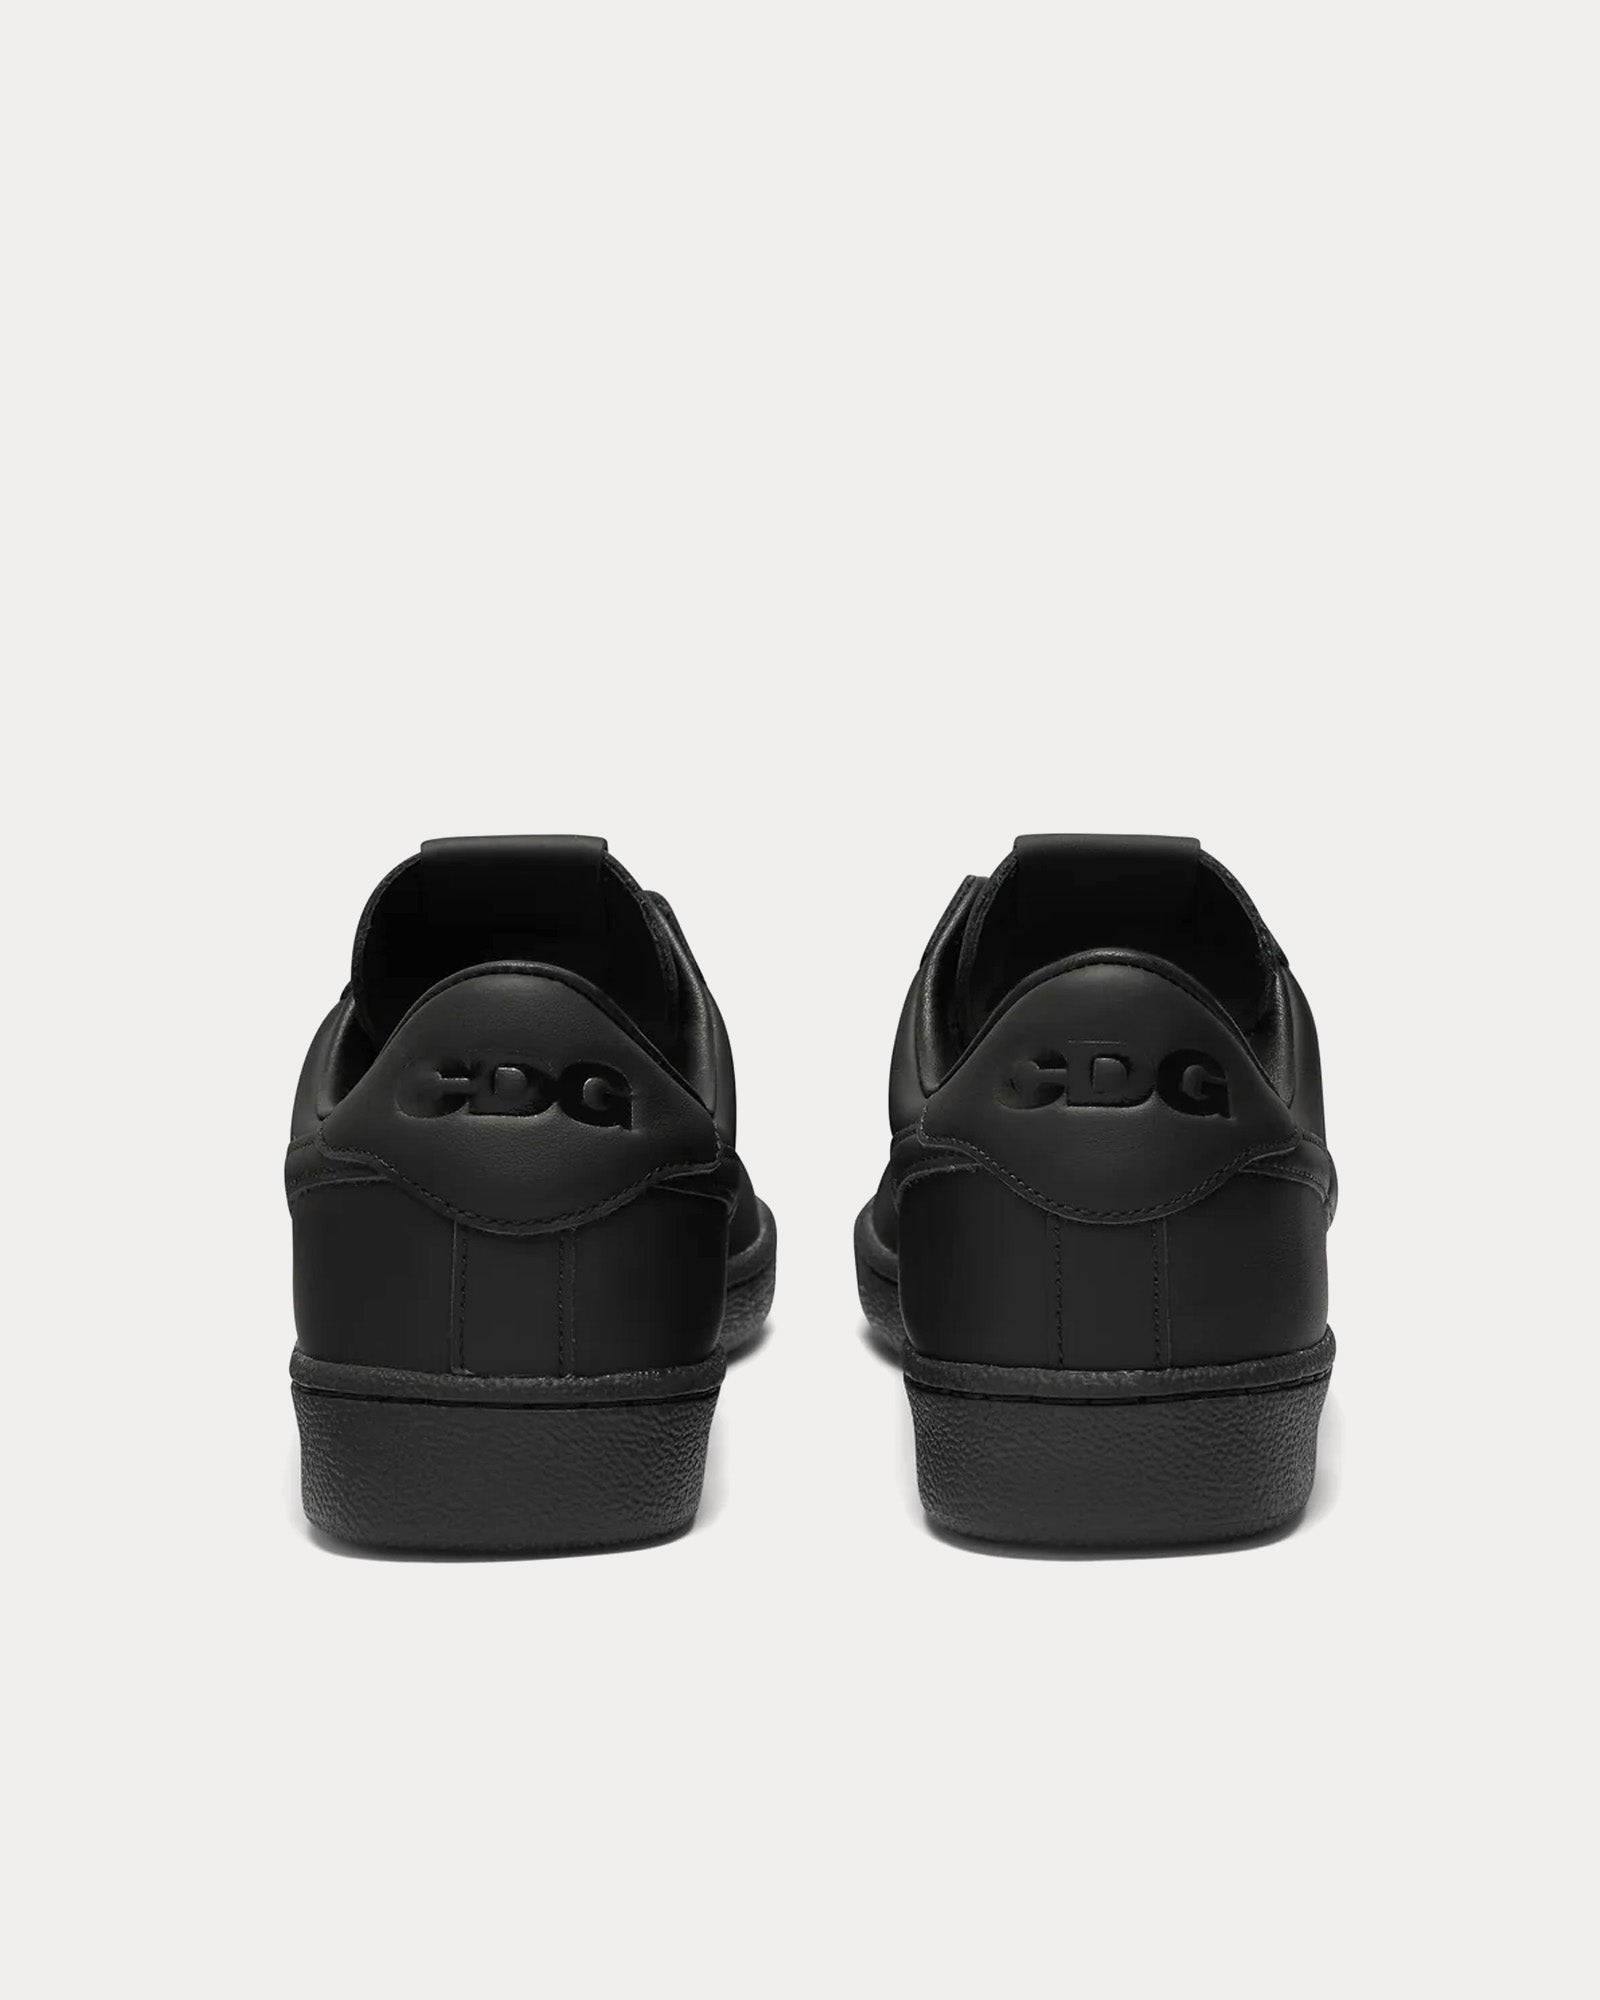 Nike x Comme des Garçons - Tennis Classic SP Black Low Top Sneakers